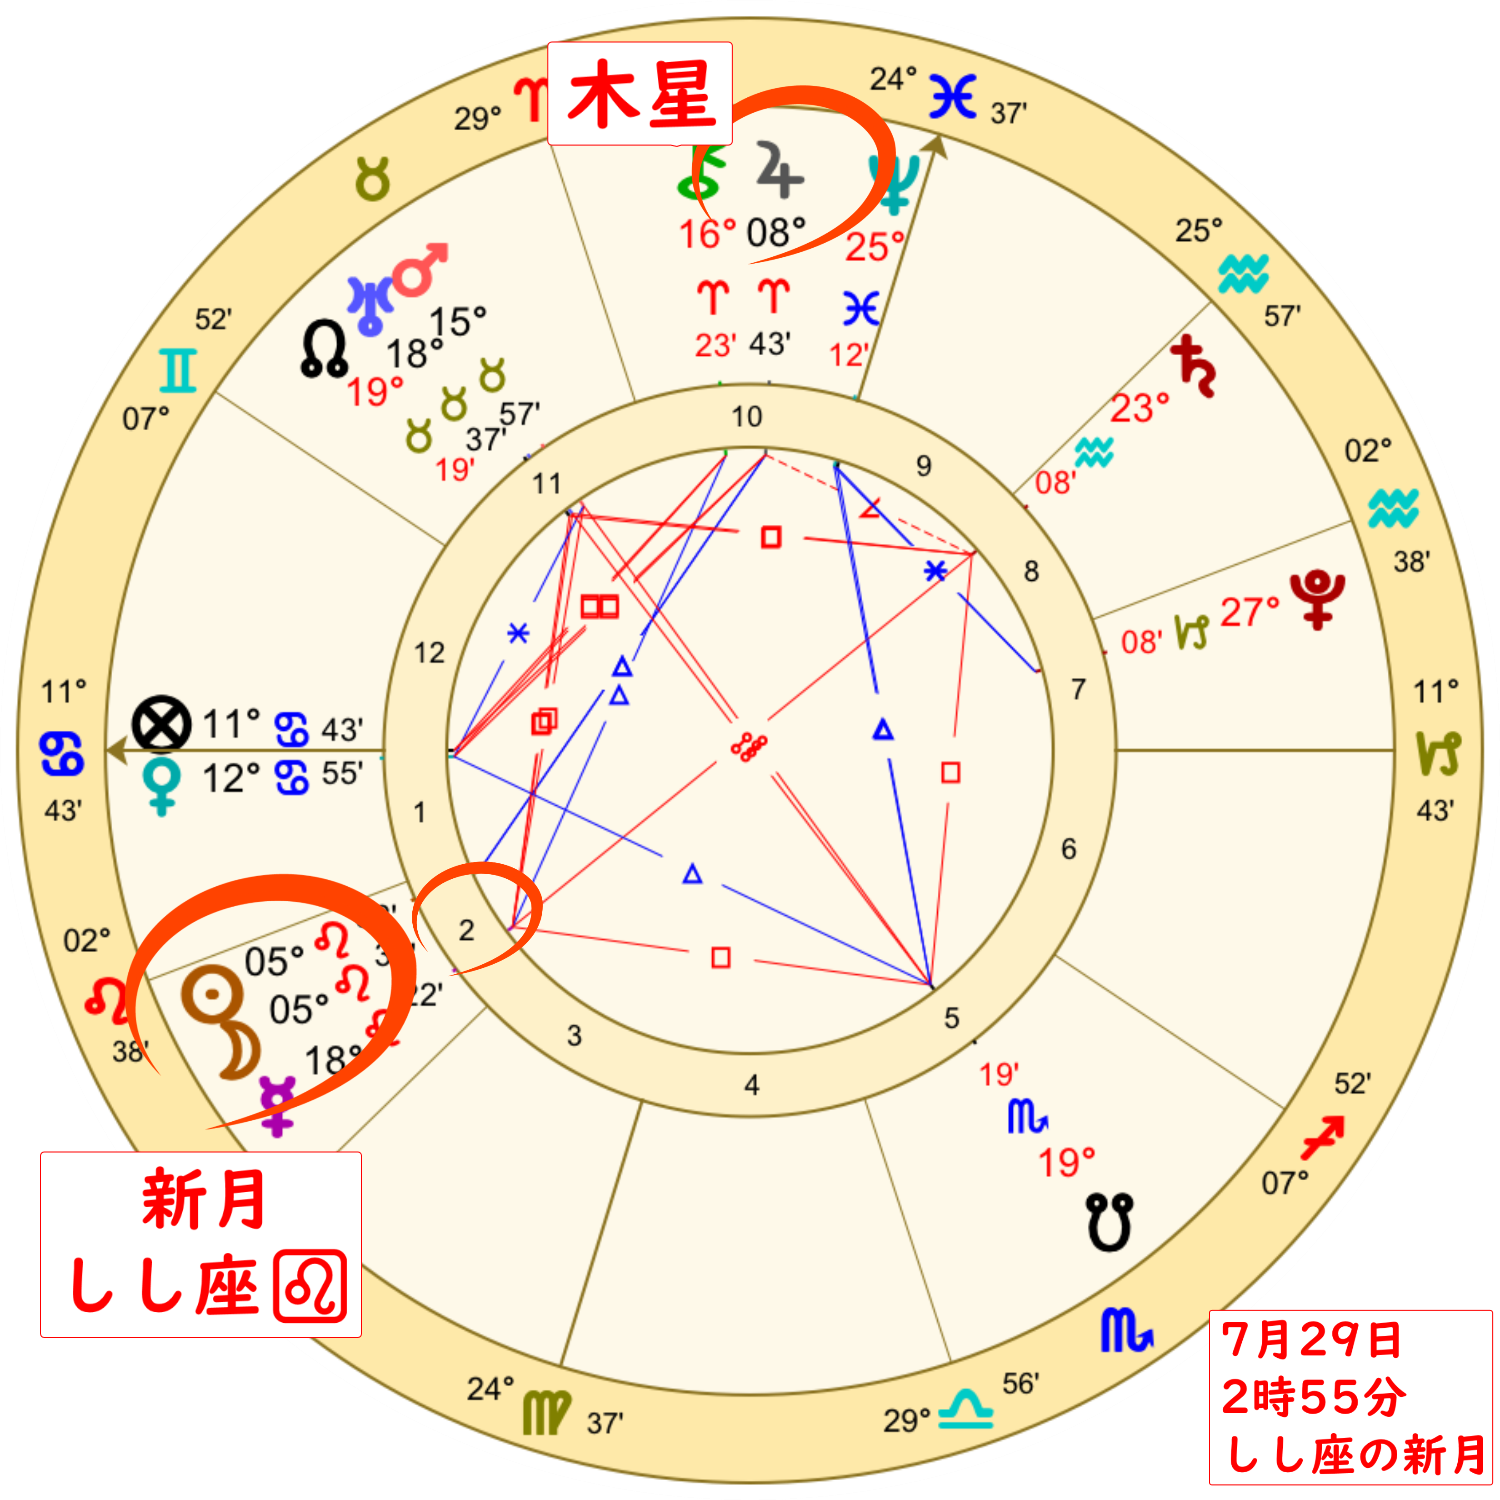 7月29日の獅子座の新月のホロスコープ解説画像